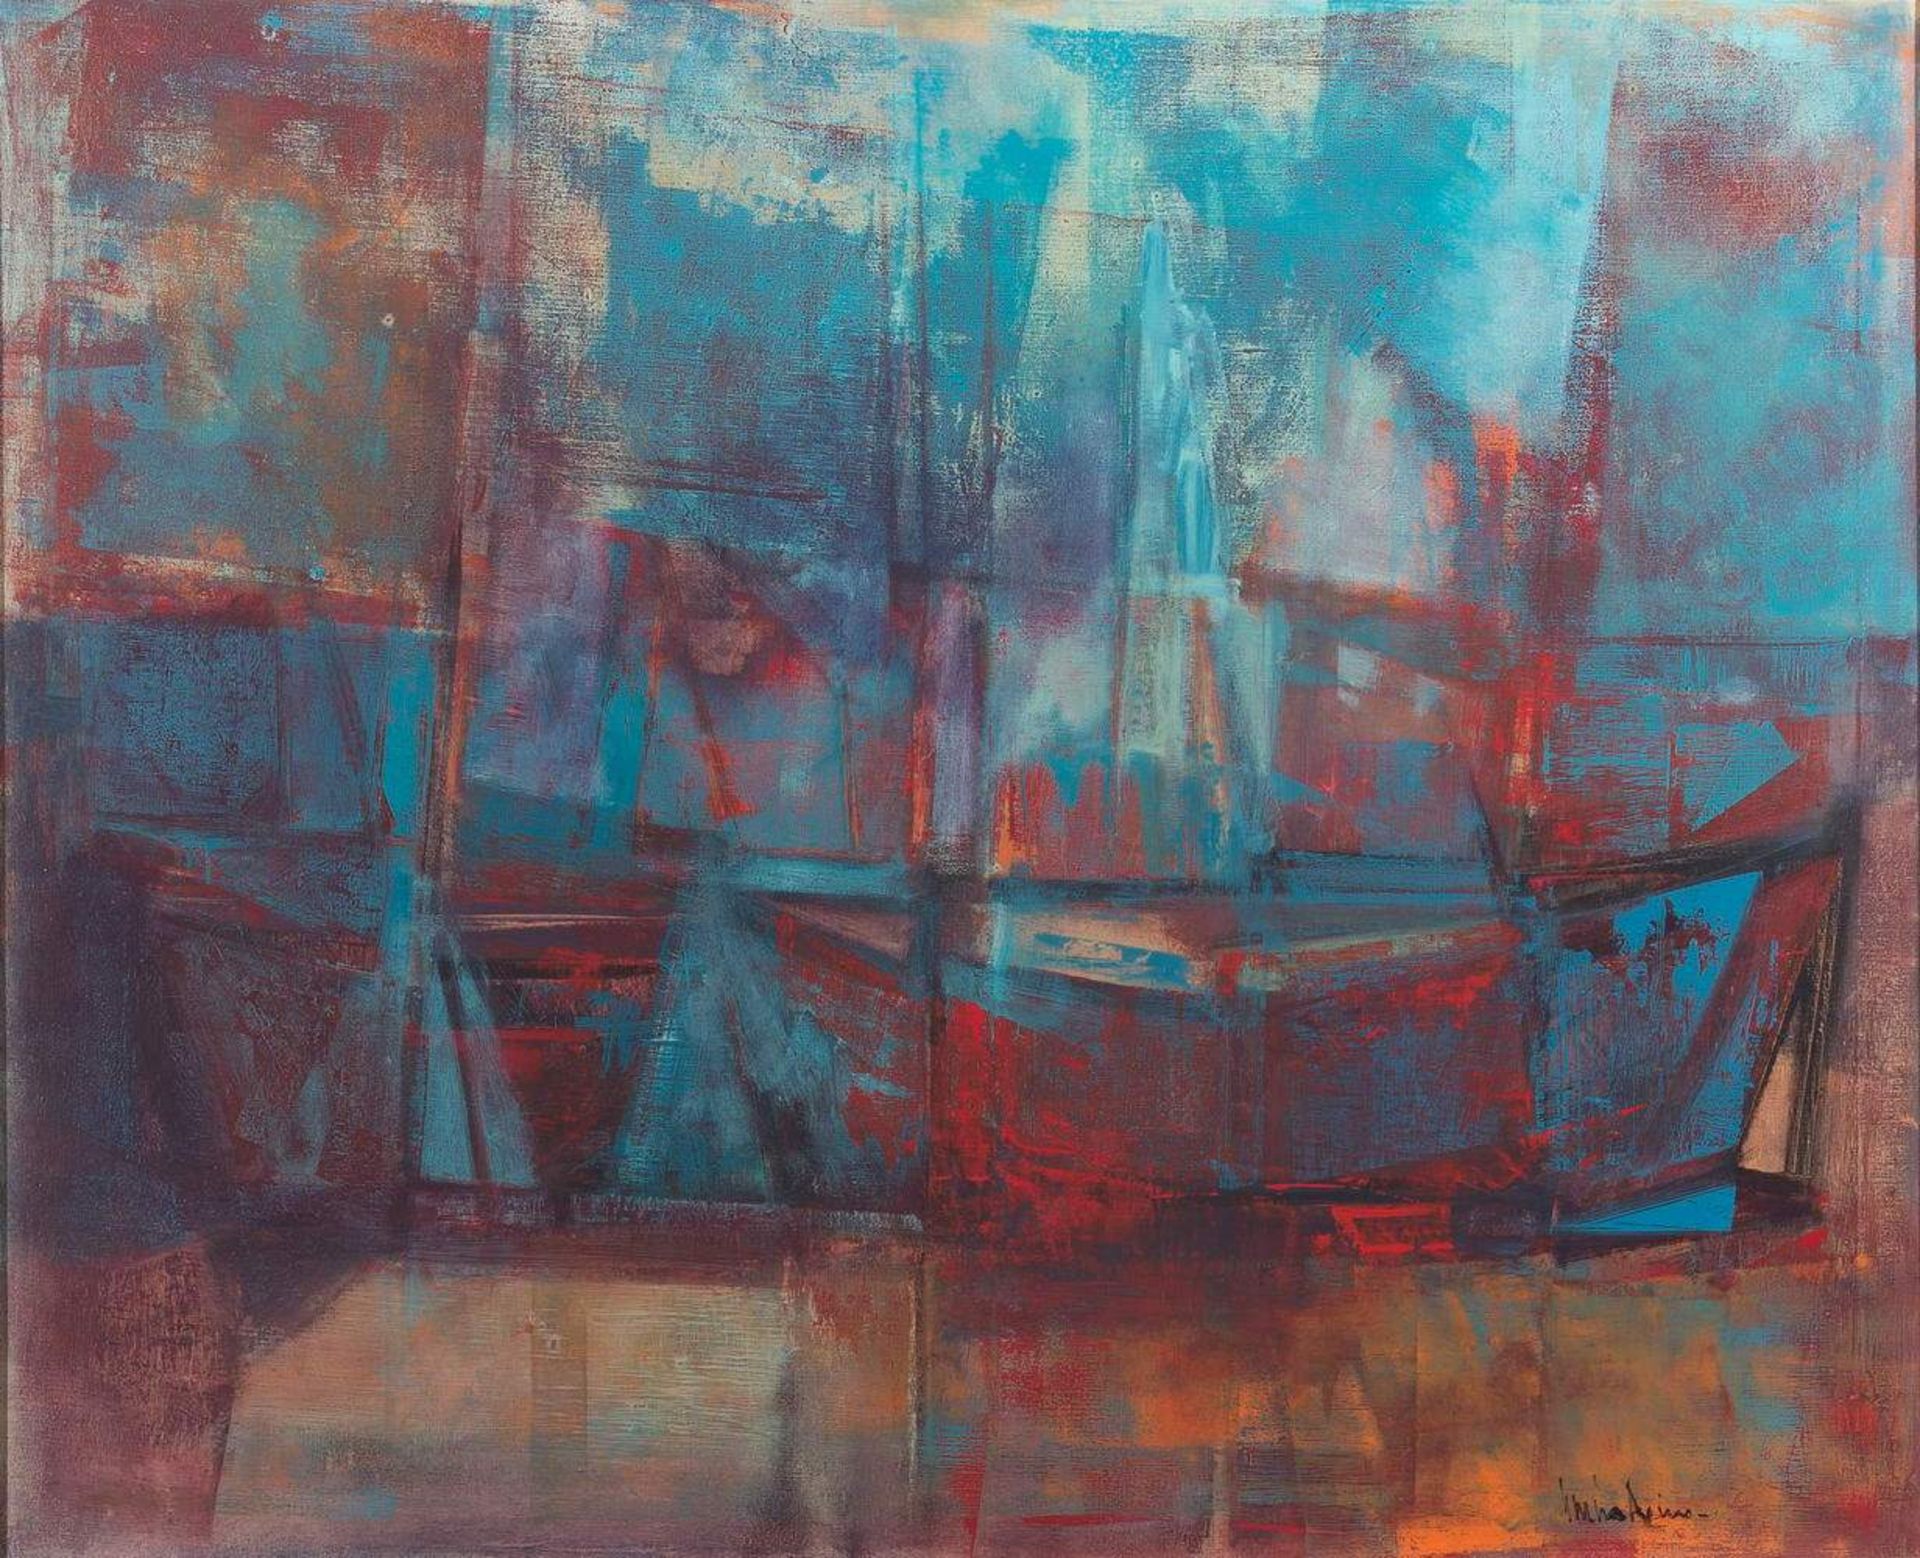 Reino, Garcia (1910 Montevideo - 1993, in Uruguay tätiger Maler), "Barcas", Öl auf Leinwand,